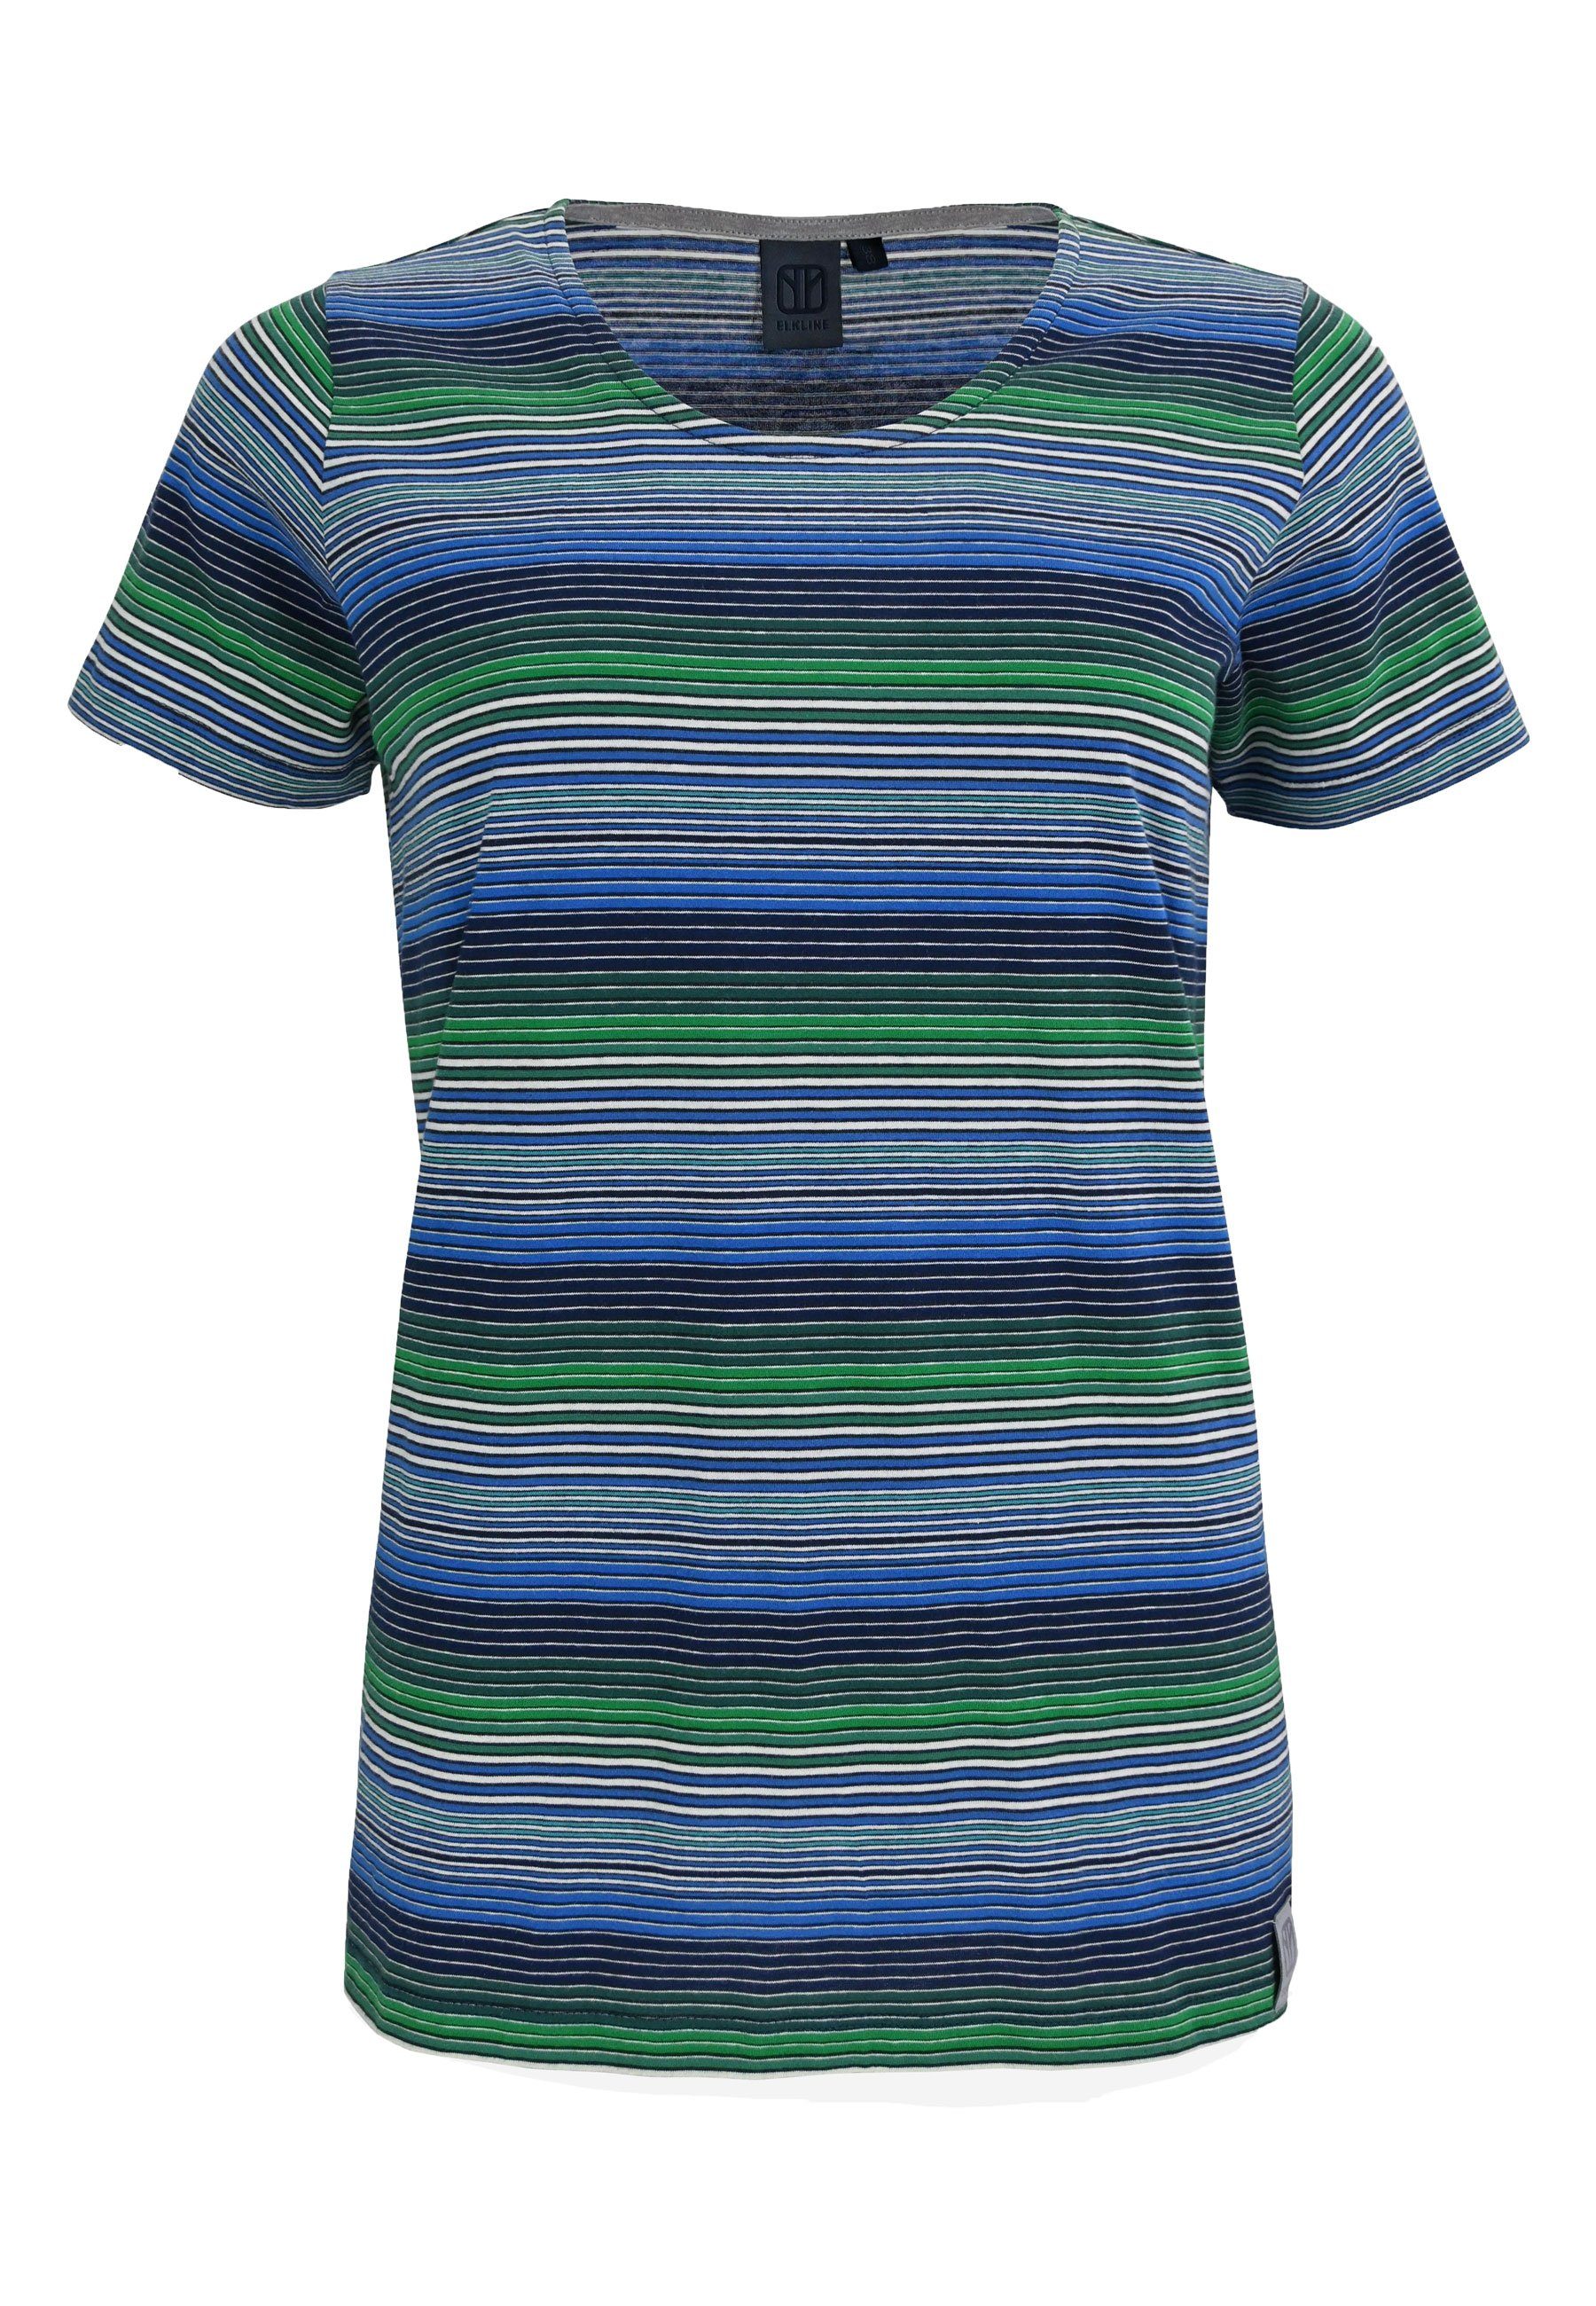 Elkline T-Shirt Candystriped bunt gestreift blue - green